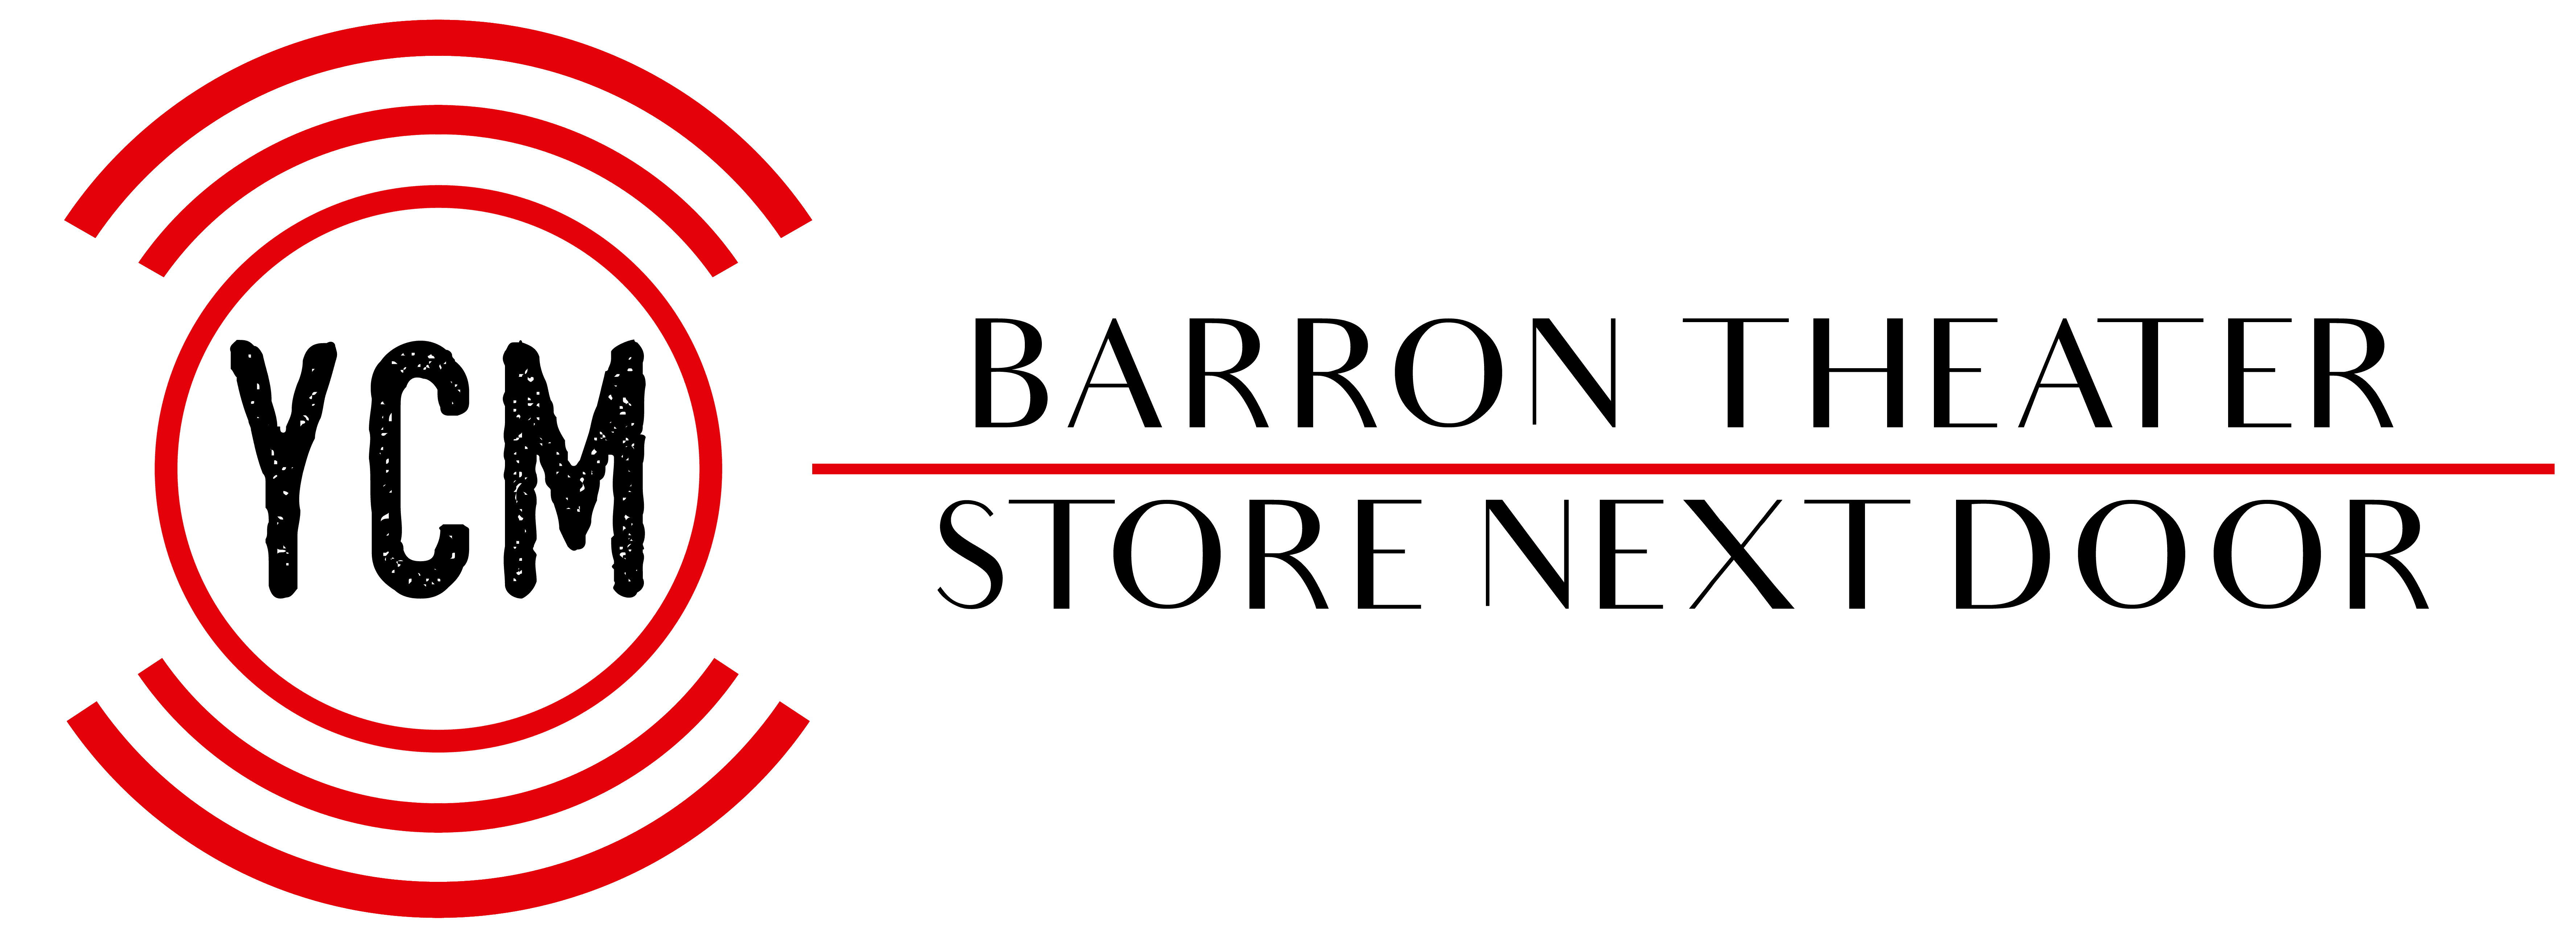 Barron Theatre Store Next Door logo